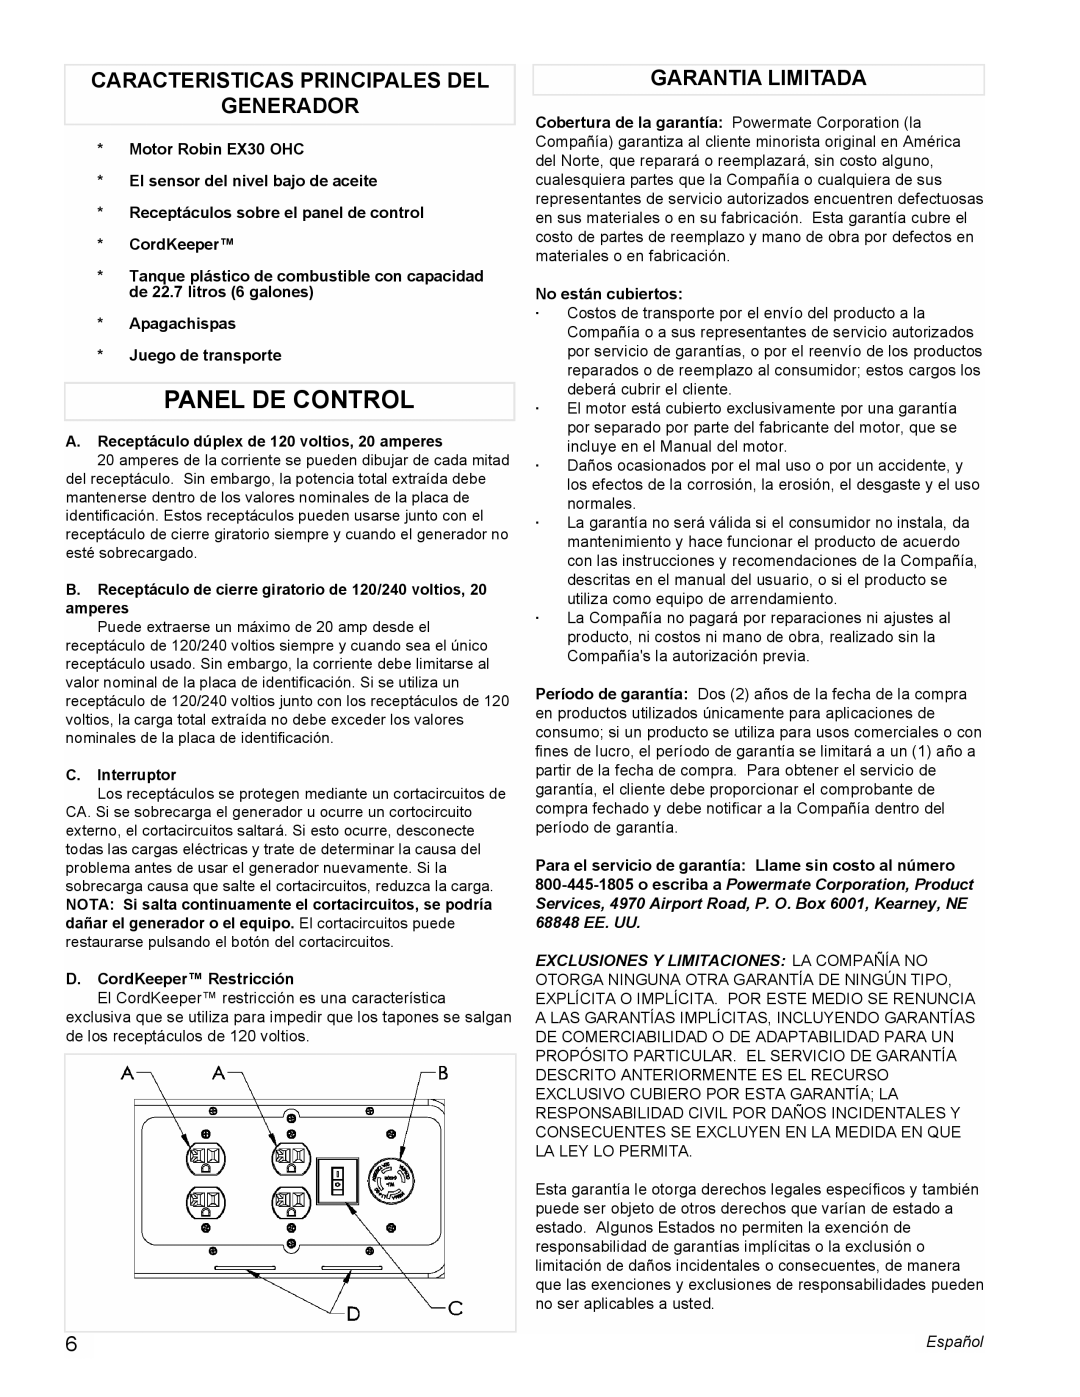 Powermate PMC435003 manual Panel De Control, Caracteristicas Principales Del Generador, Garantia Limitada 